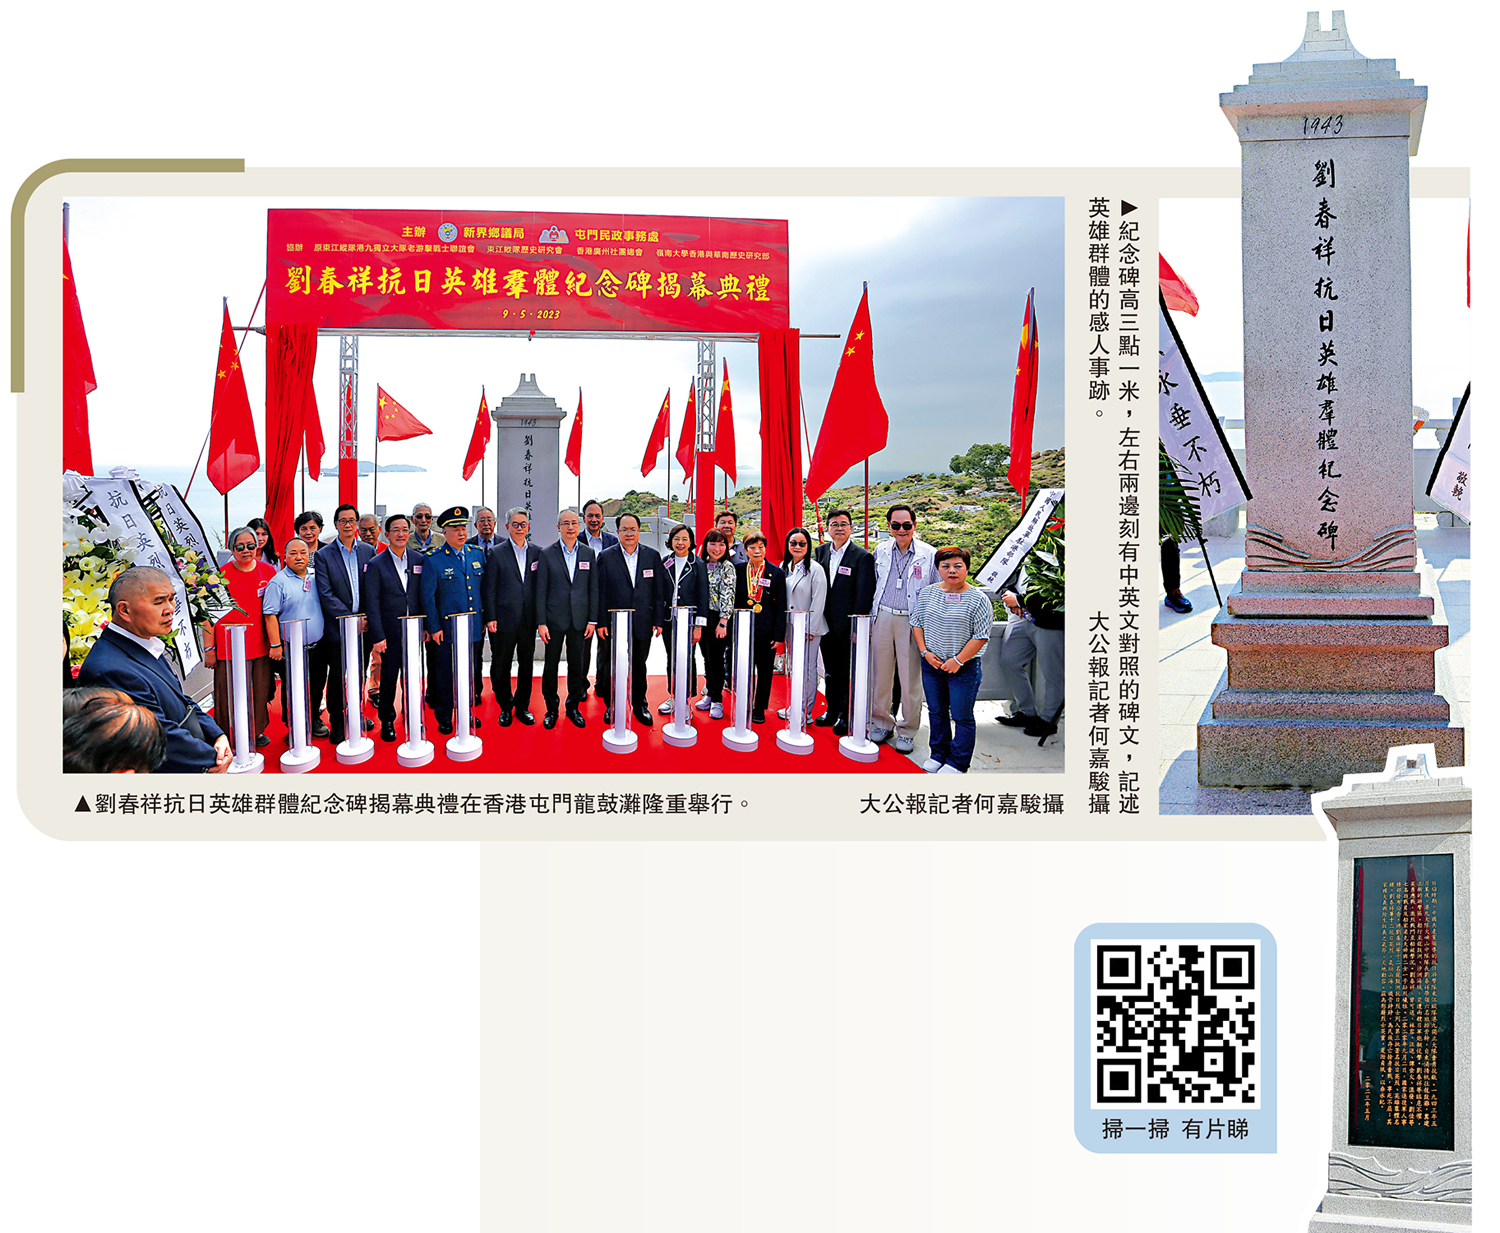 　　左圖：劉春祥抗日英雄群體紀念碑揭幕典禮在香港屯門龍鼓灘隆重舉行。右圖：紀念碑高三點一米，左右兩邊刻有中英文對照的碑文，記述英雄群體的感人事跡。\大公報記者何嘉駿攝